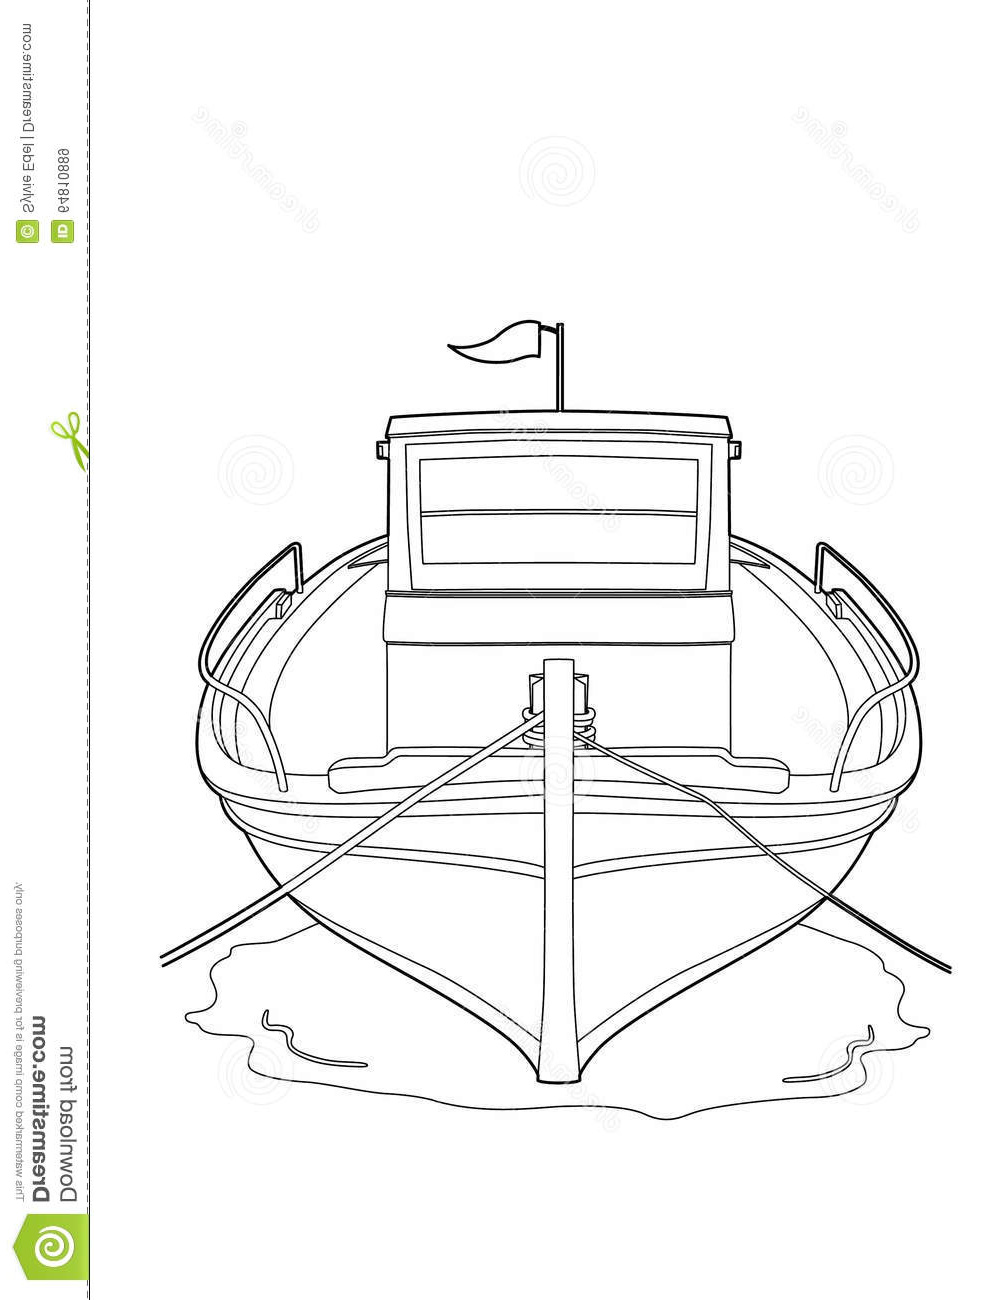 illustration stock dessin d un bateau de pche image